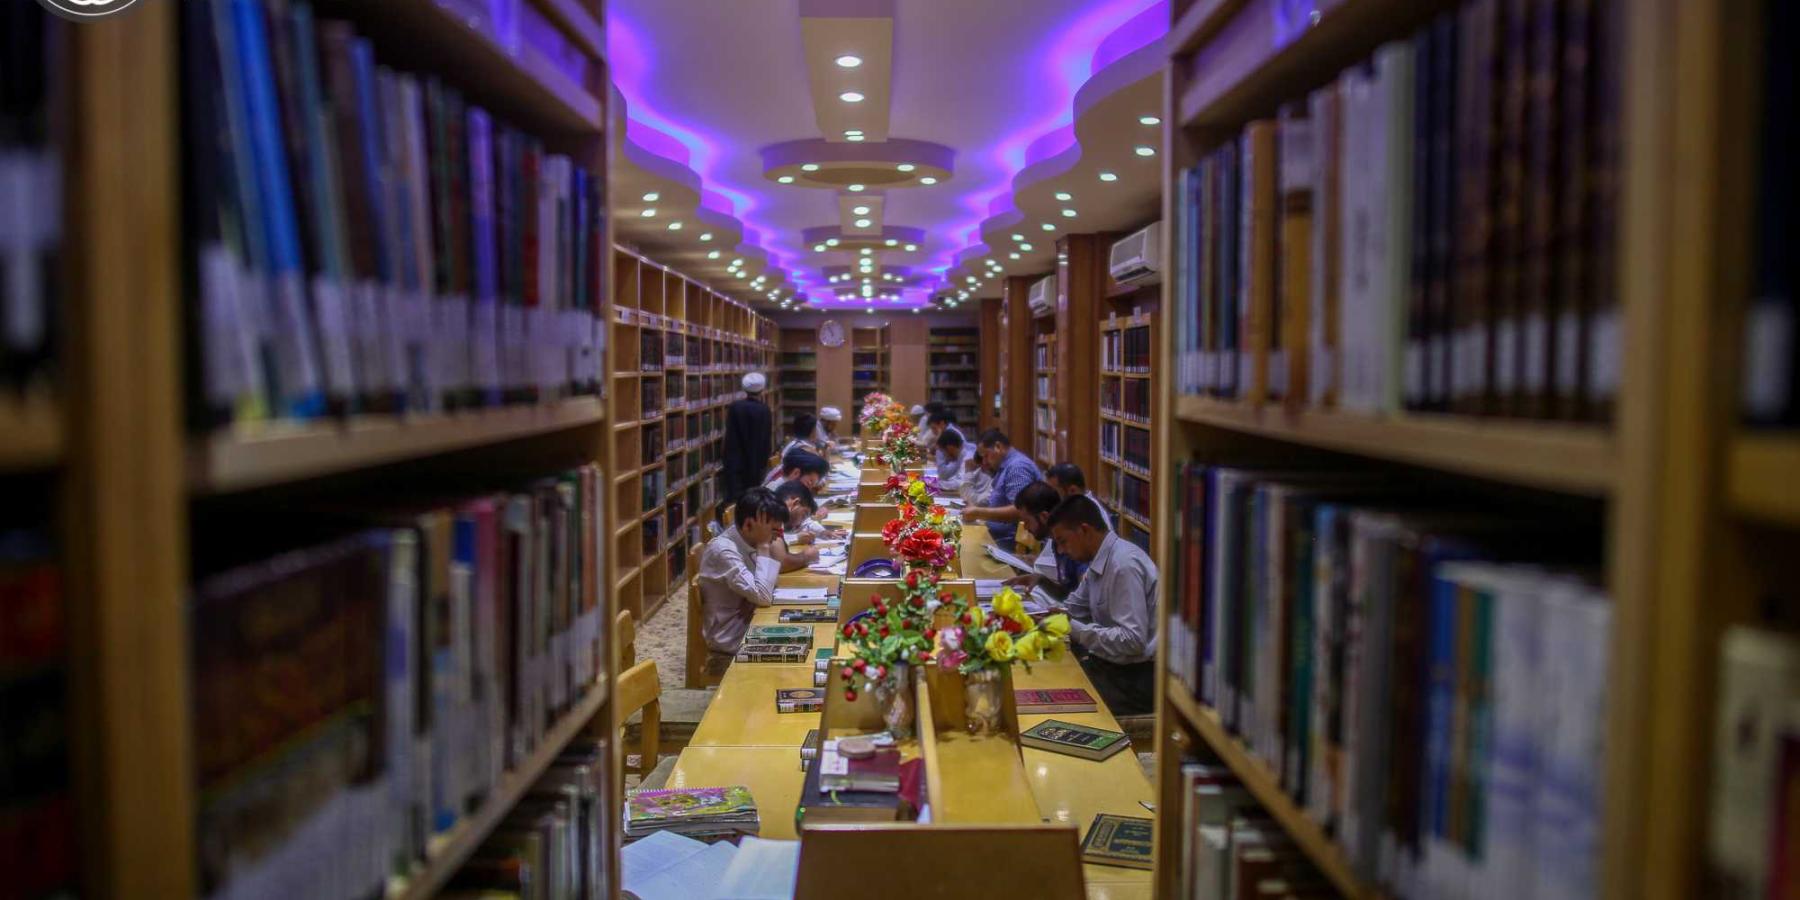 مكتبة الروضة الحيدرية :اعداد مشروع المكتبة المليونية ضمن المشاريع الثقافية لعام 2017 